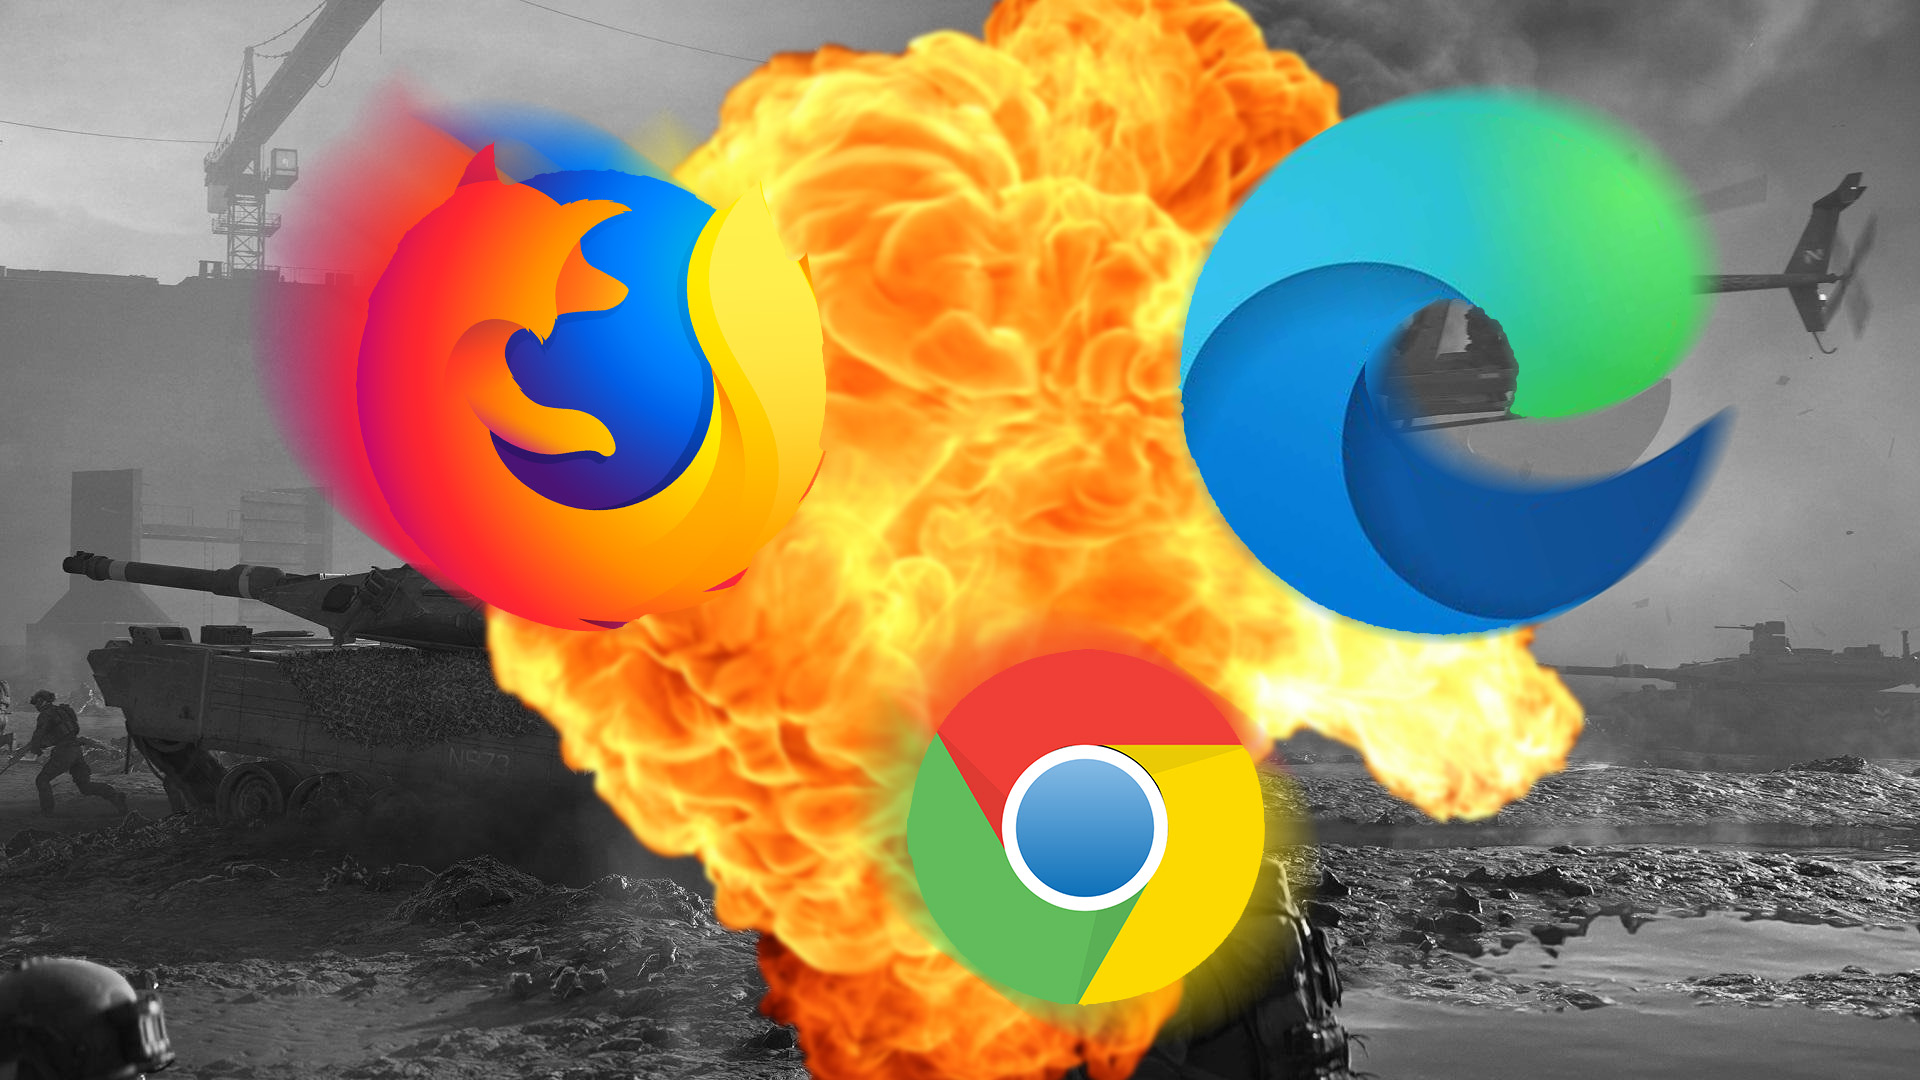 Browser Wars The Best Microsoft Edge Vs Chrome Vs Firefox Reddit